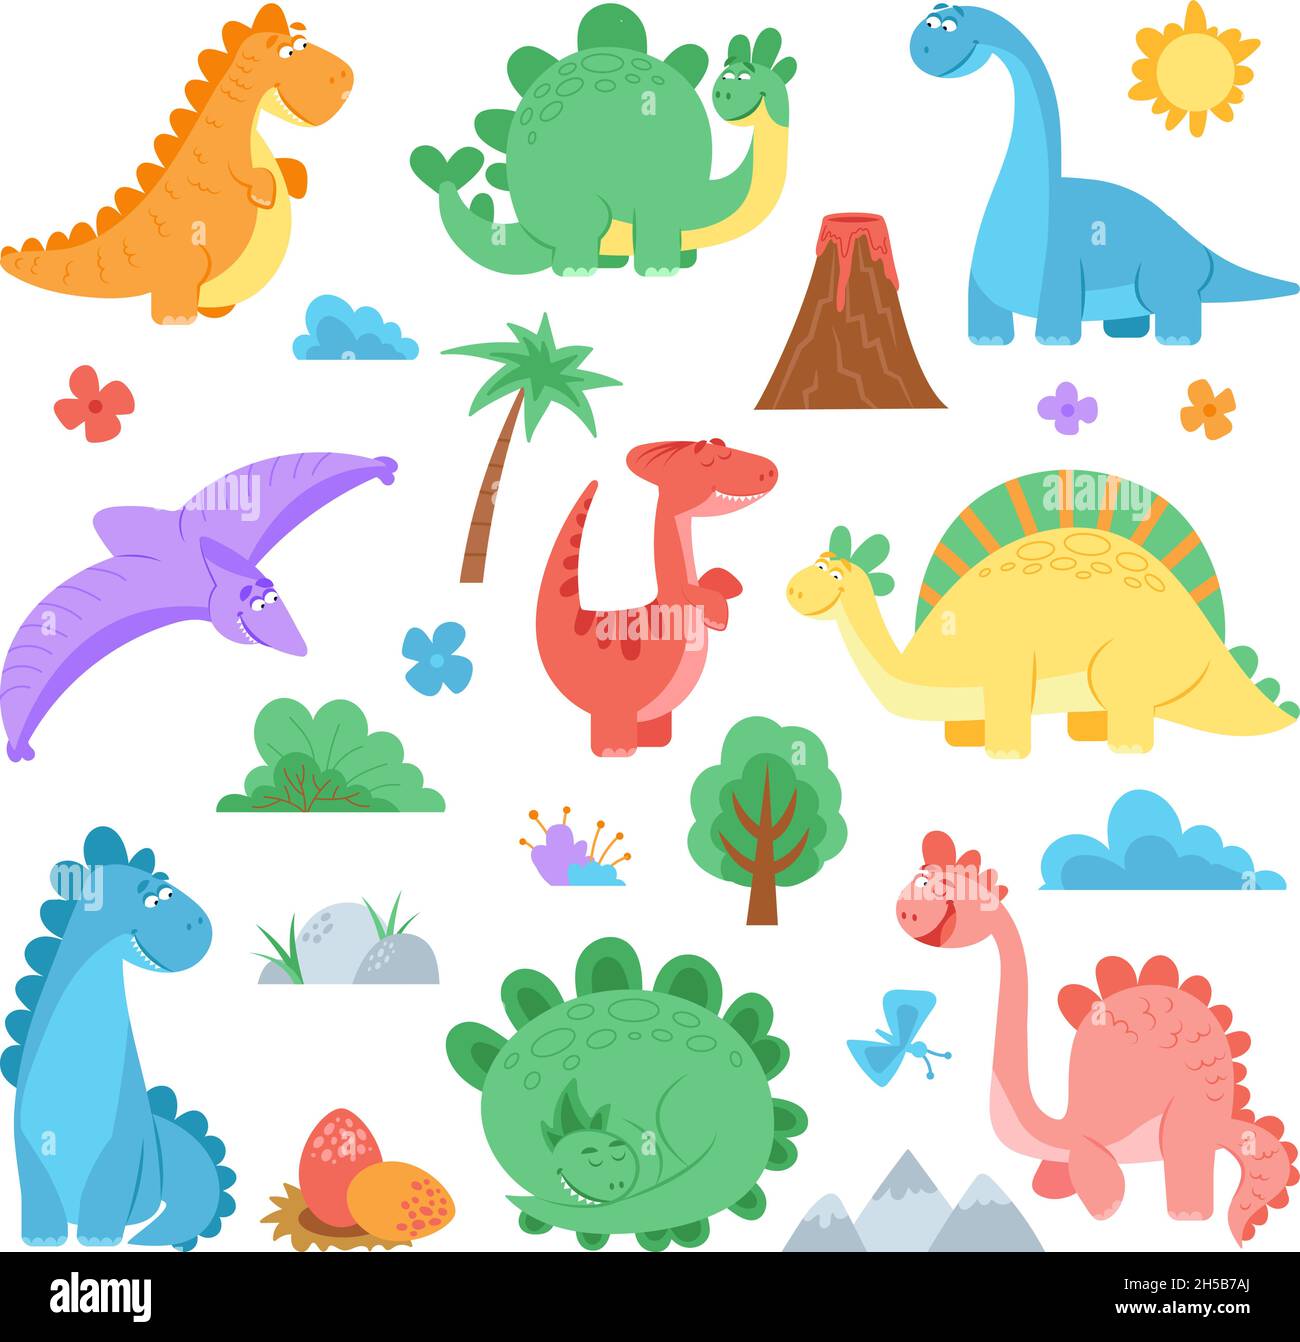 Colección de láminas infantiles Dinoland